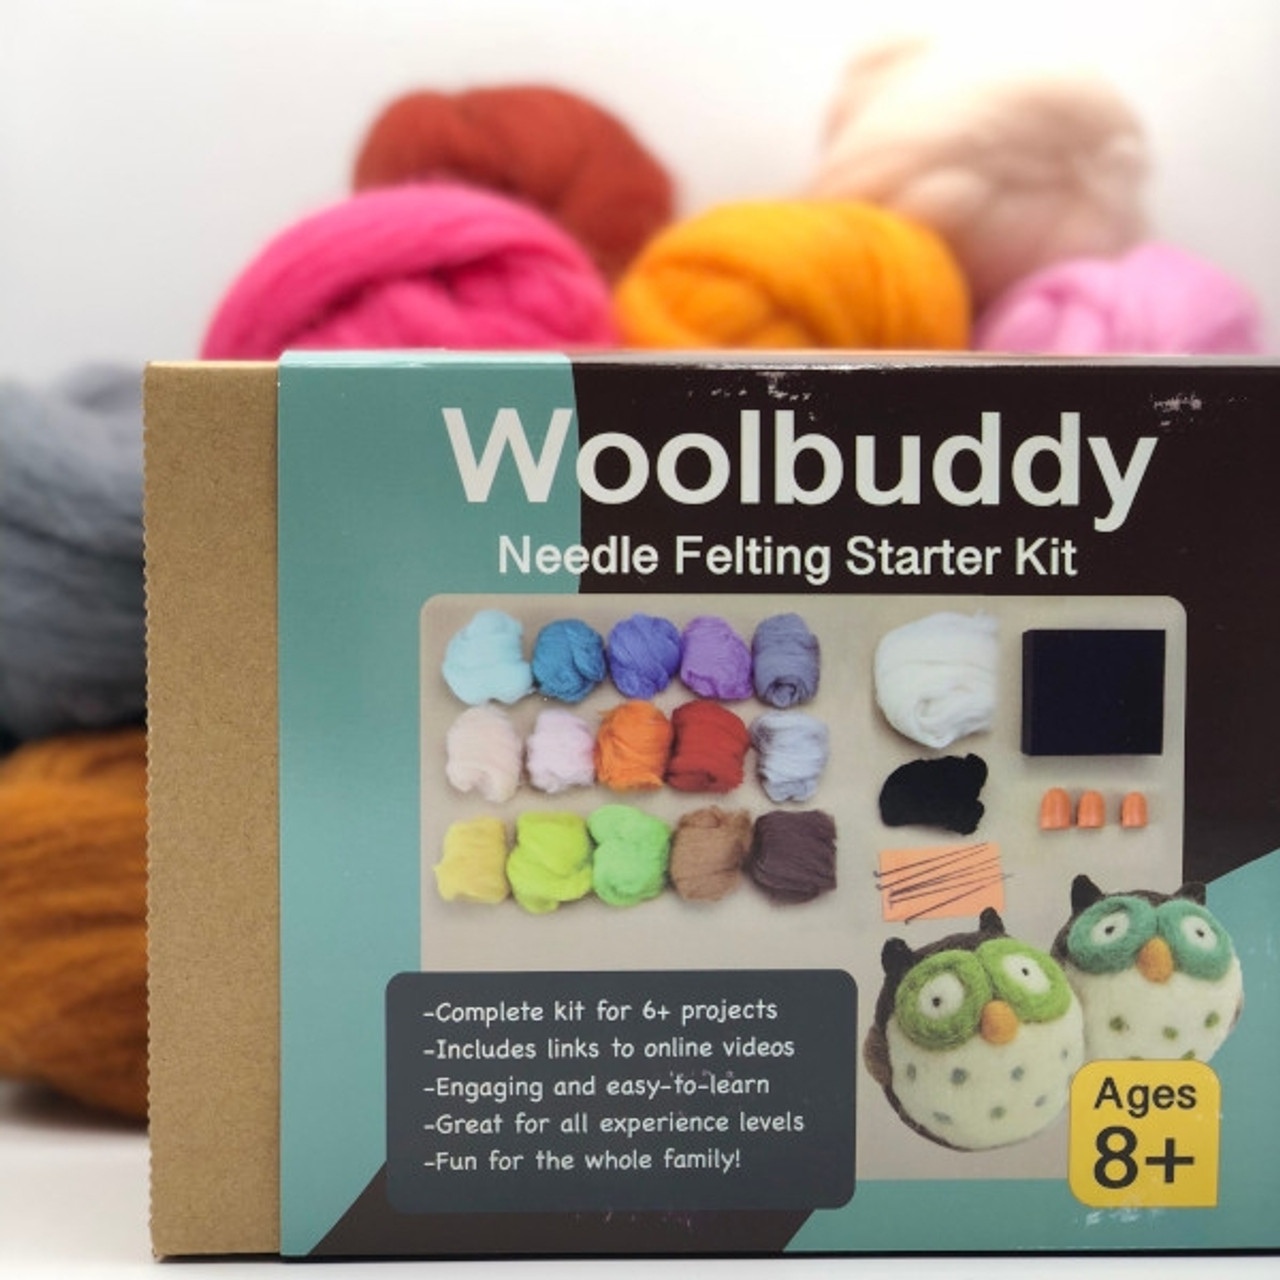 Woolbuddy Needle Felting Starter Kit